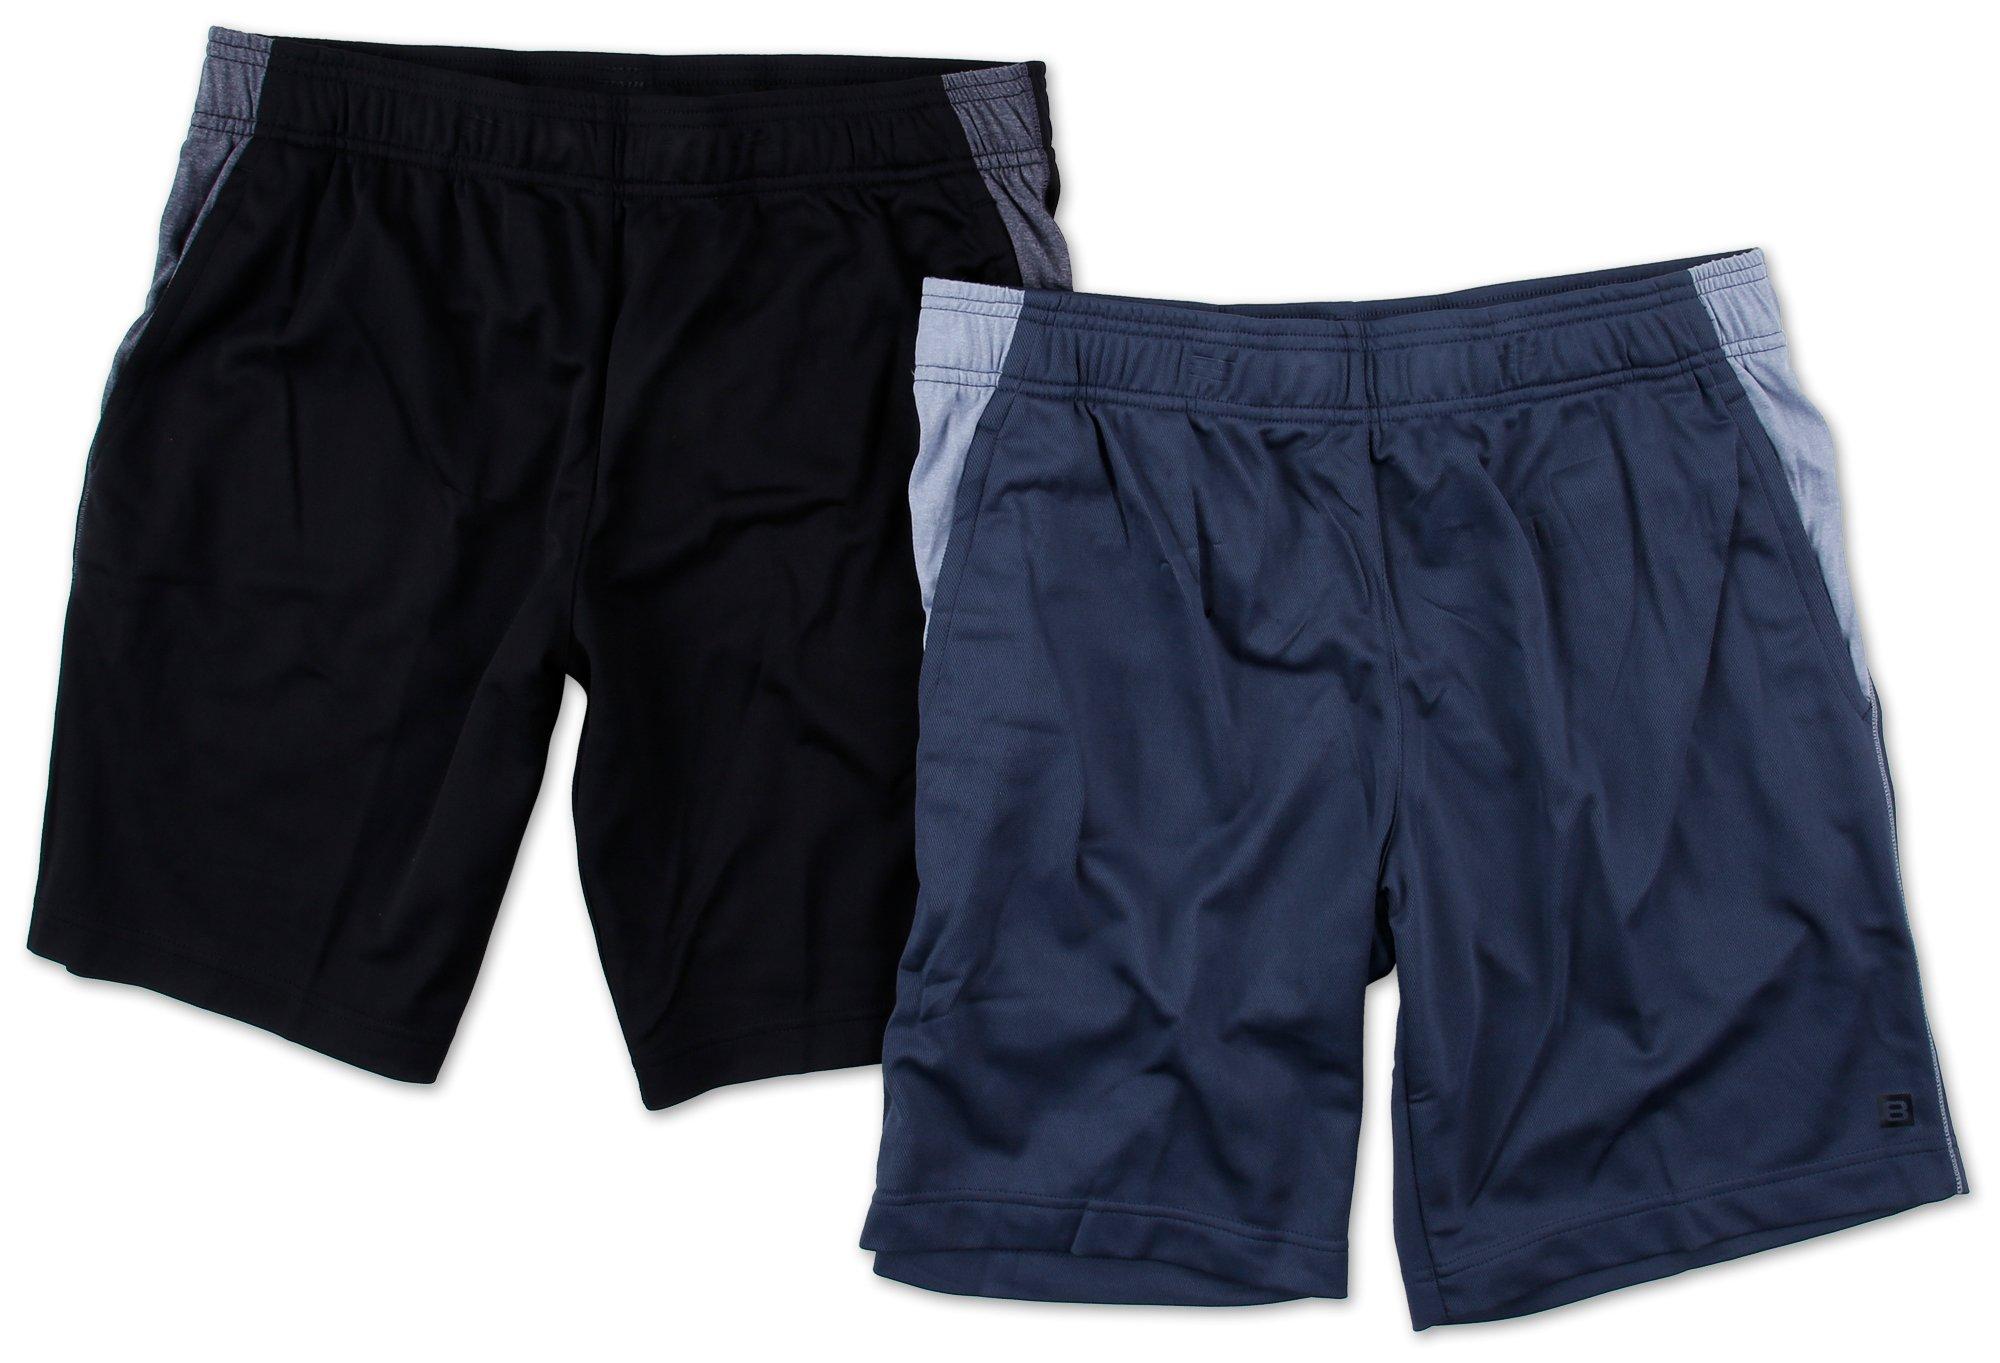 Men's Active 2 Pc Shorts